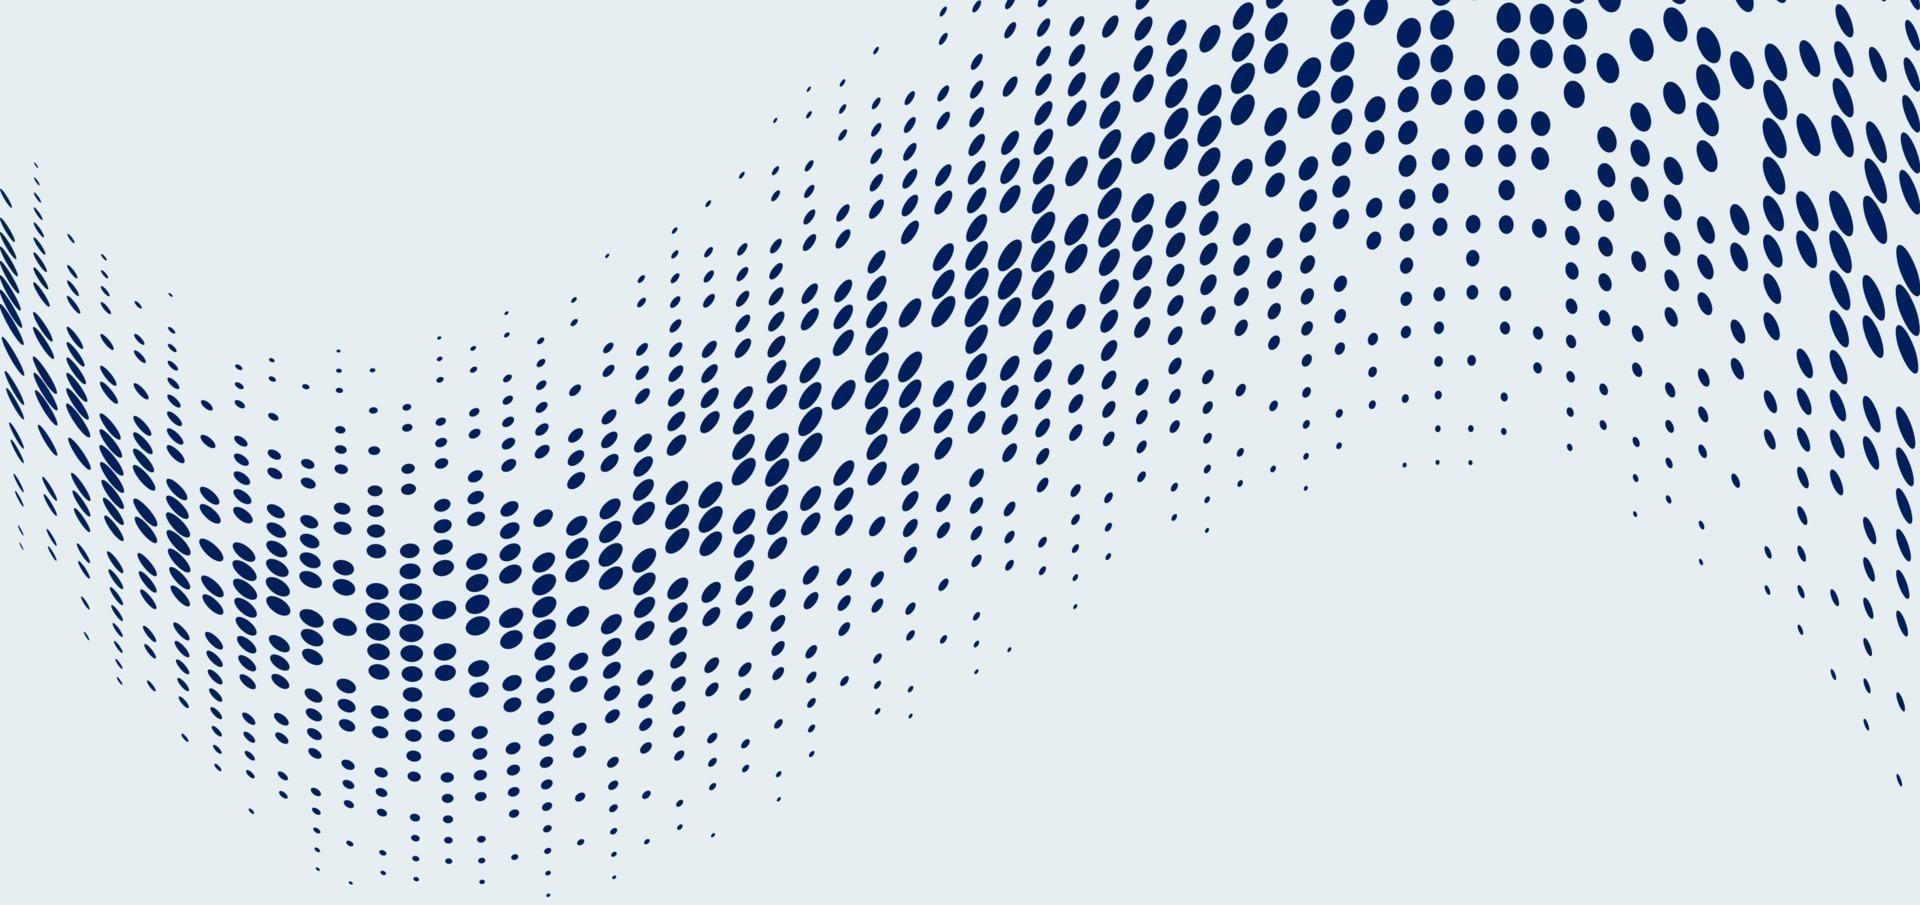 tecnología abstracta estilo futurista big data patrón de círculo geométrico azul semitono de onda sobre fondo blanco y textura vector